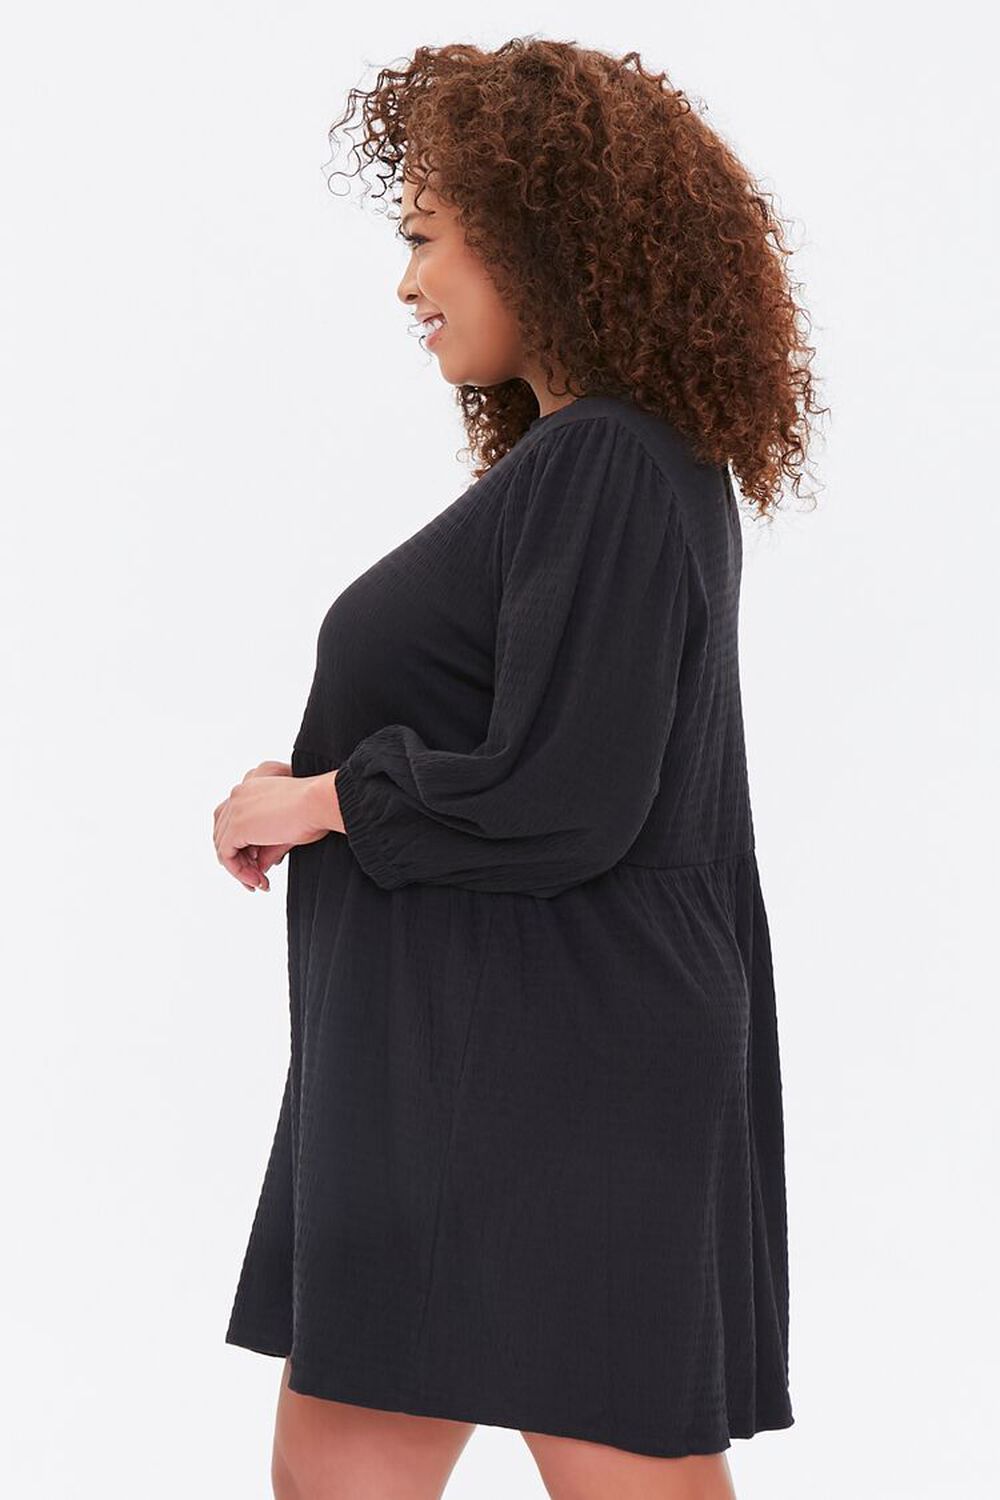 BLACK Plus Size Textured Mini Dress, image 2